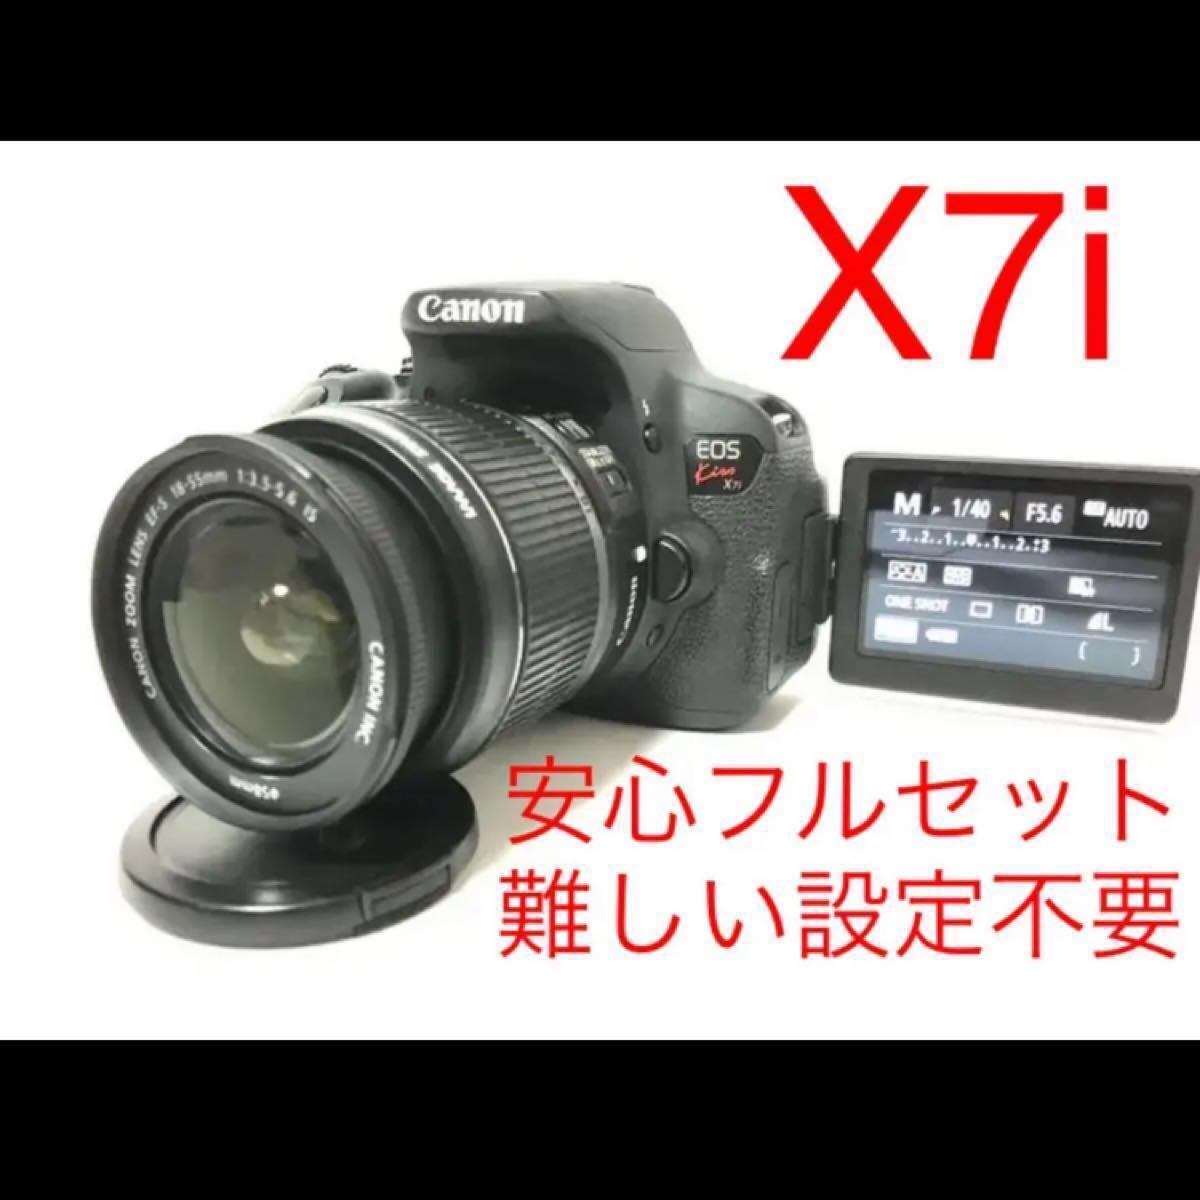 Canon EOS ニコン Nikon 1J kiss ダブルズーム X7i  レンズ付き安心フルセット♪難しい設定不要♪即利用可能♪バリアングル♪手のひらサイズ♪